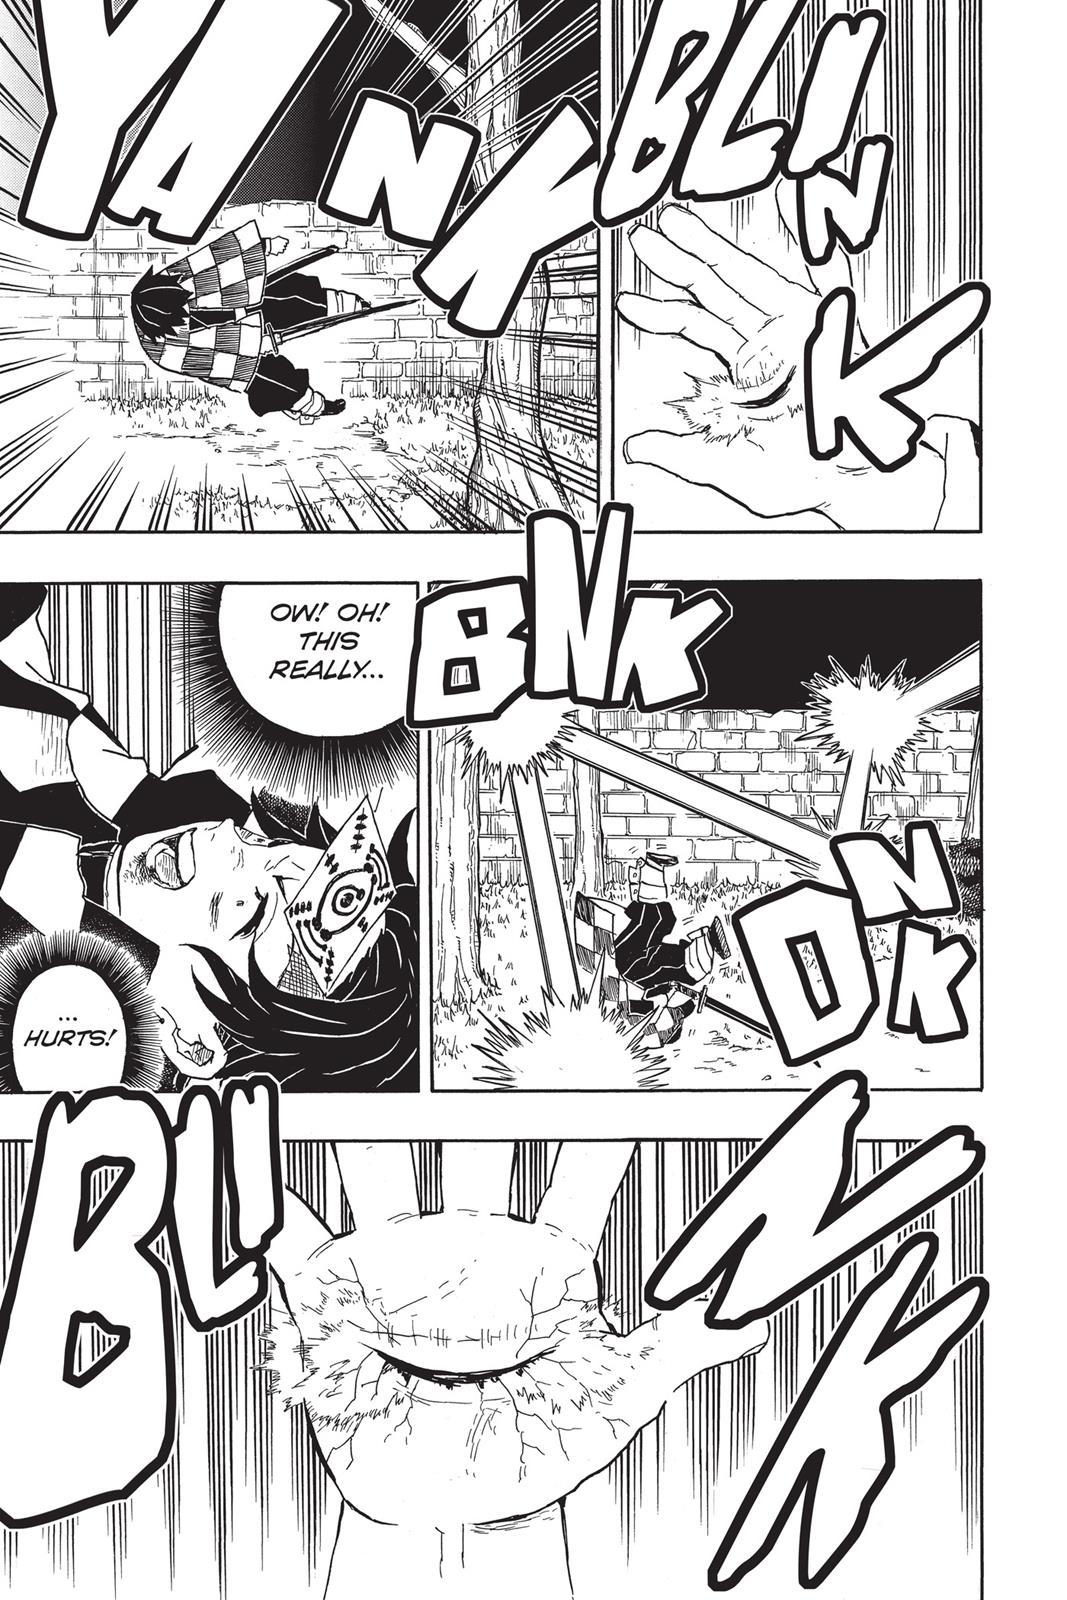 Demon Slayer Manga Manga Chapter - 17 - image 14